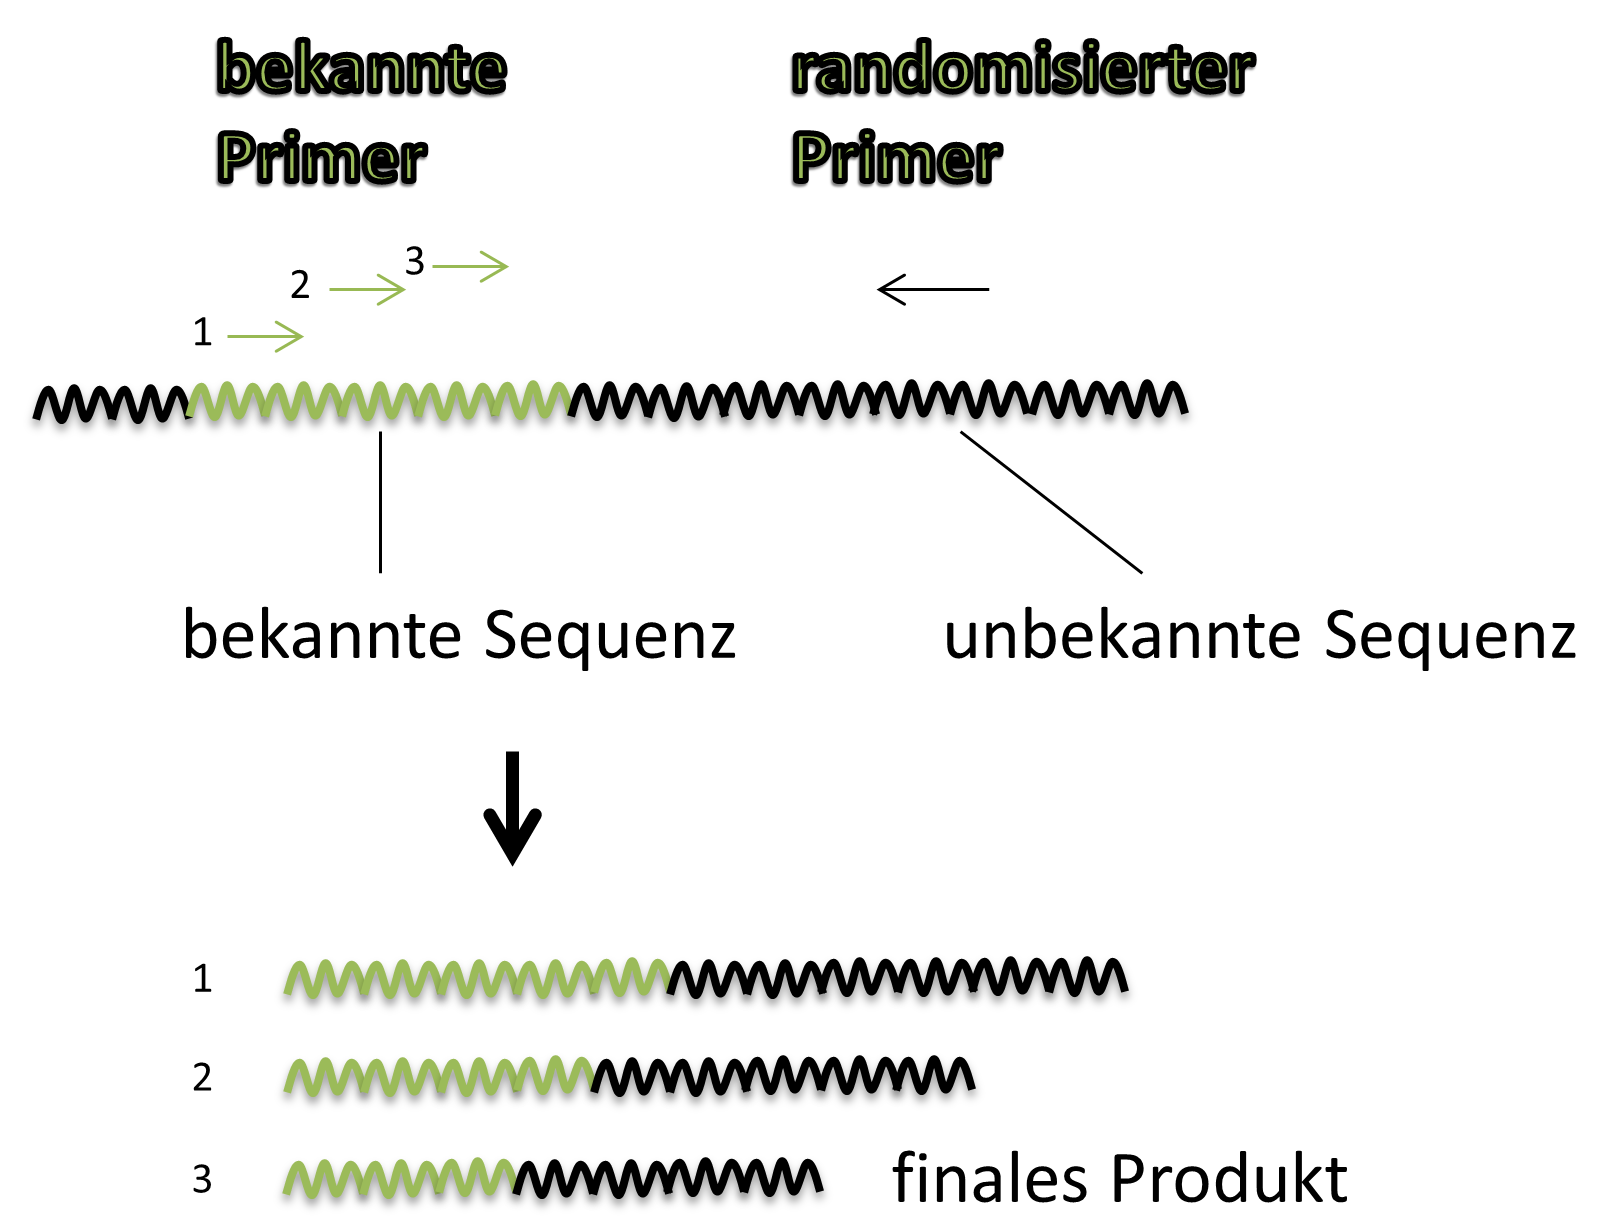 Genomwalking mit TAIL-PCR